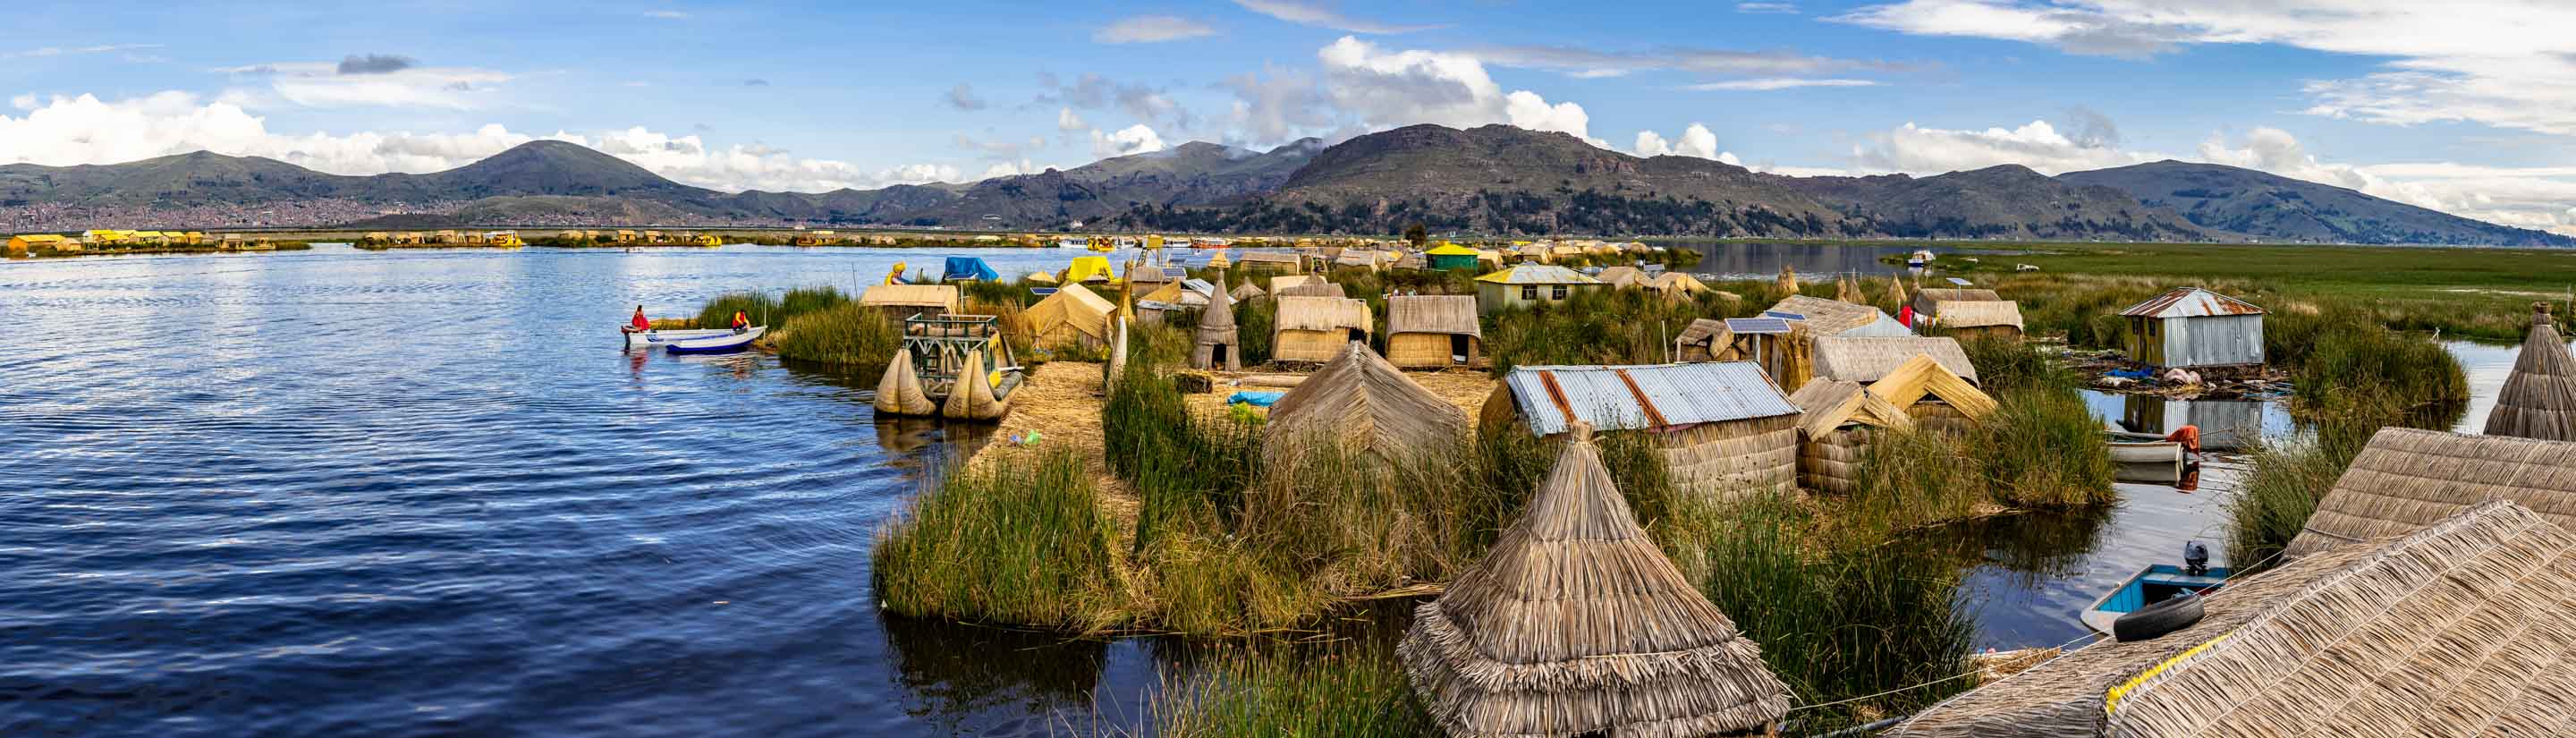 Ihre Peru-Rundreise: Die Weite der Anden 